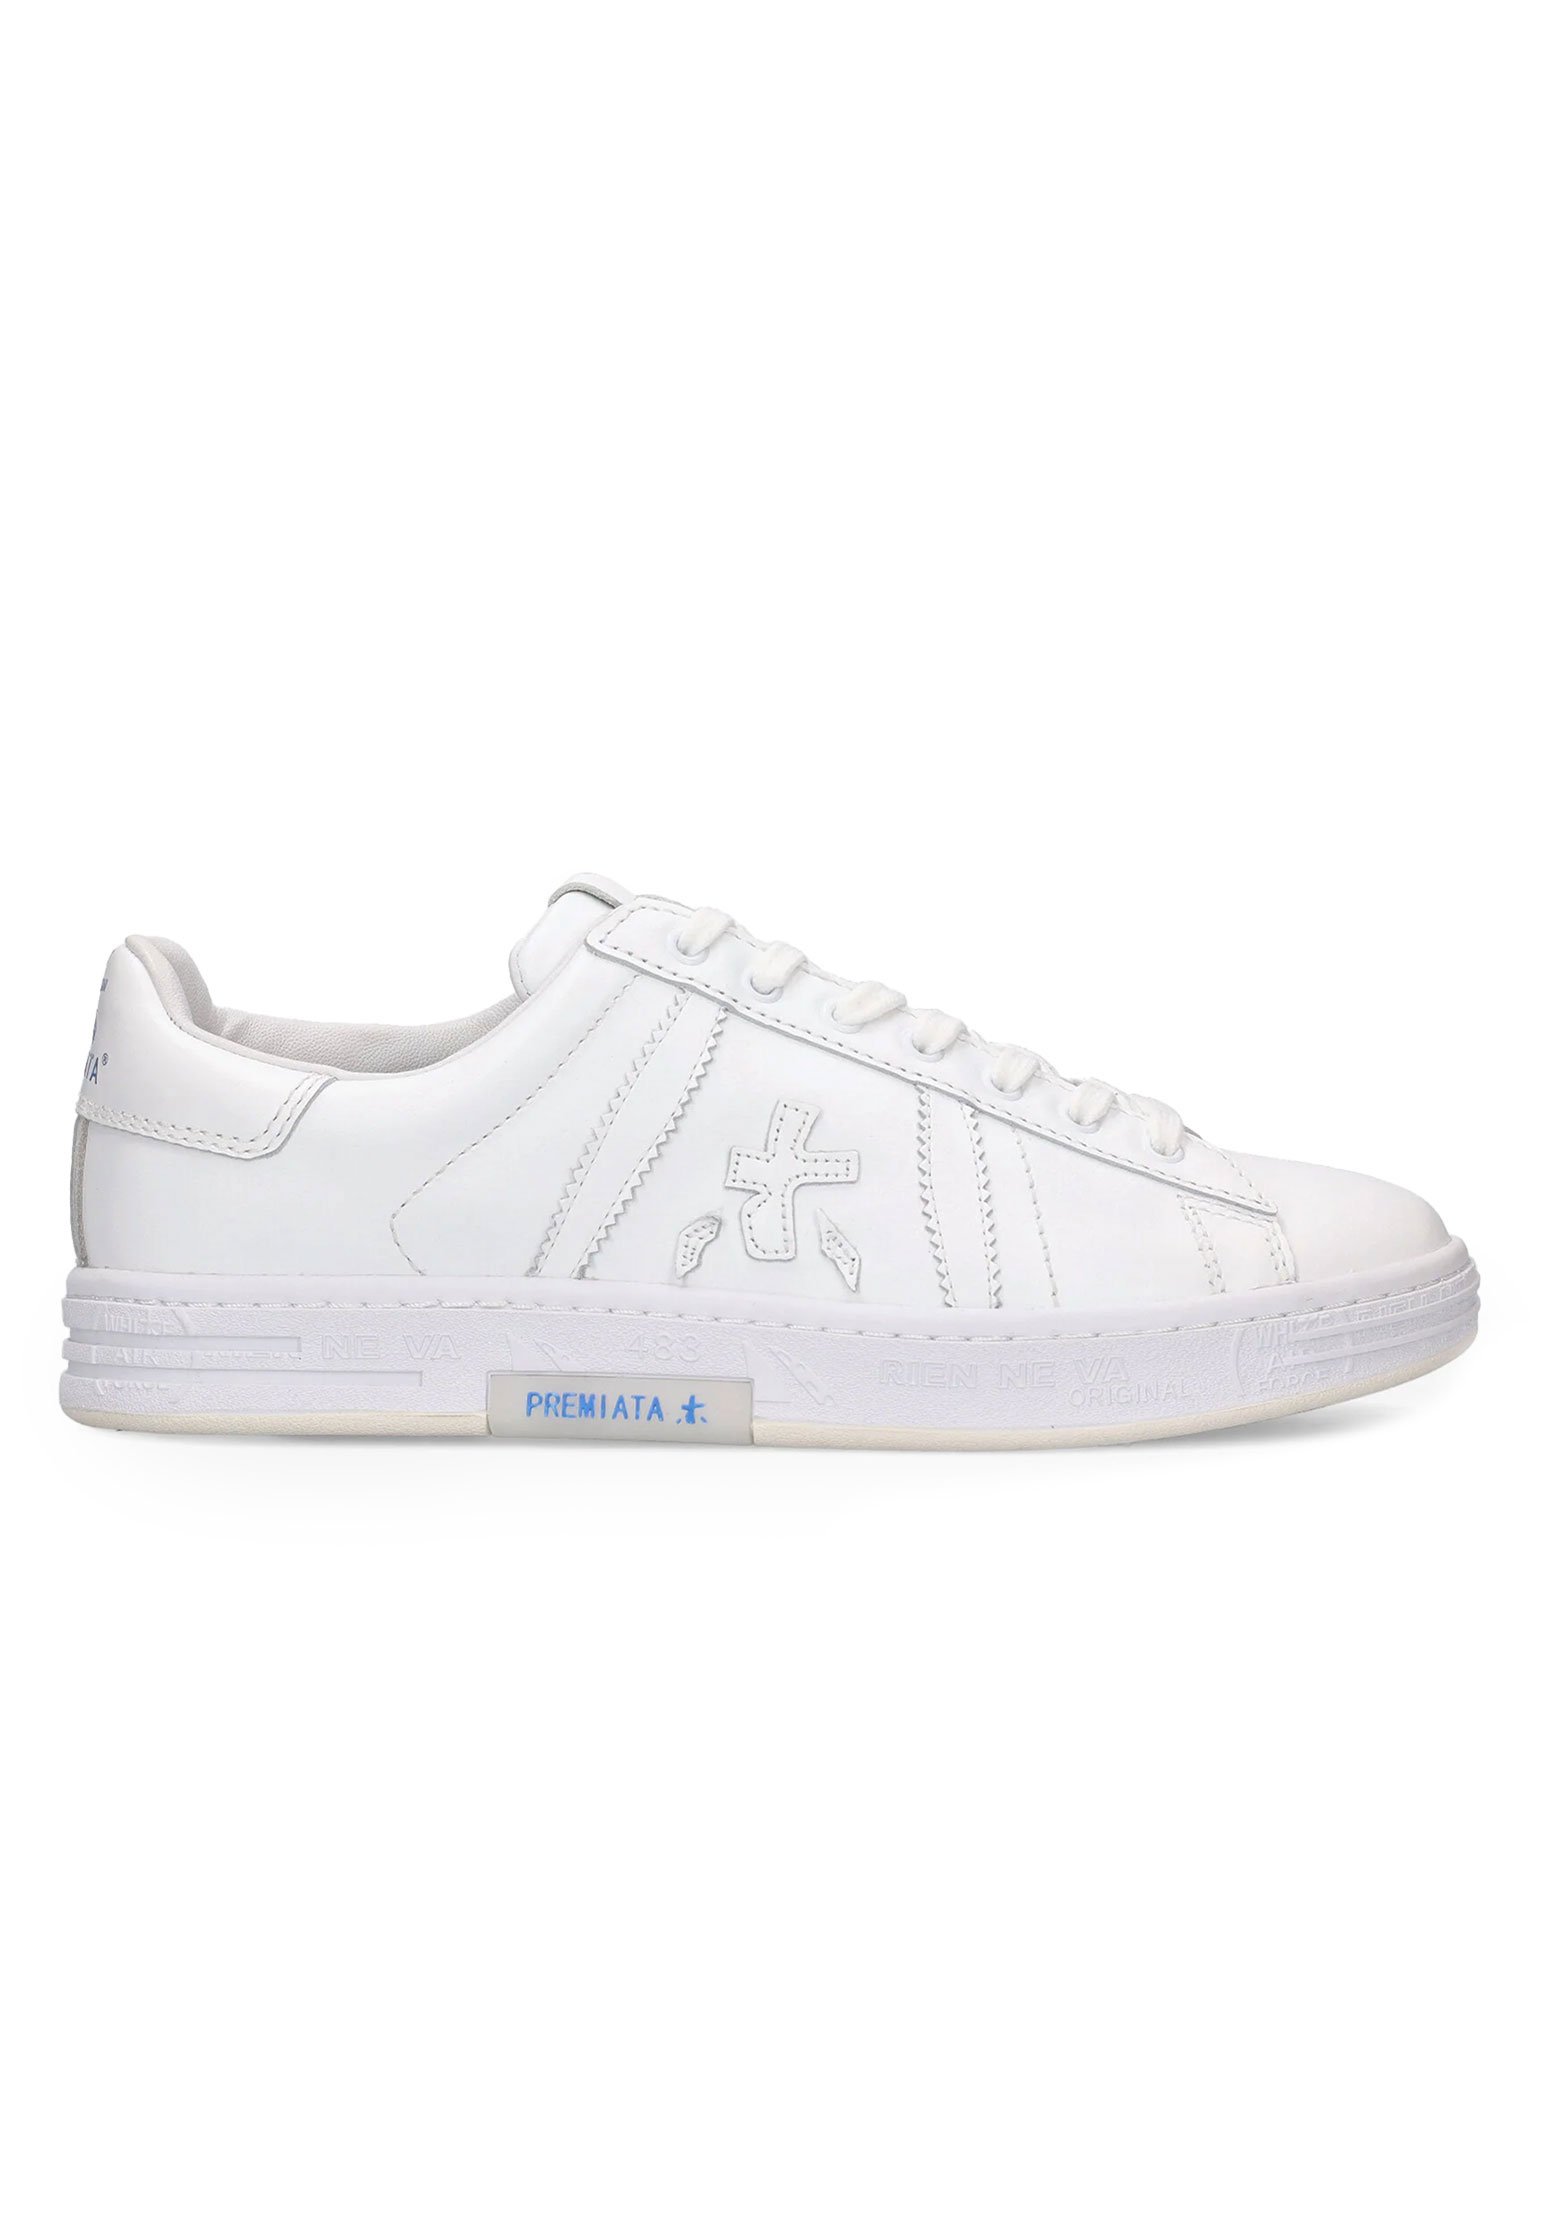 Sneakers PREMIATA Color: white (Code: 4177) in online store Allure